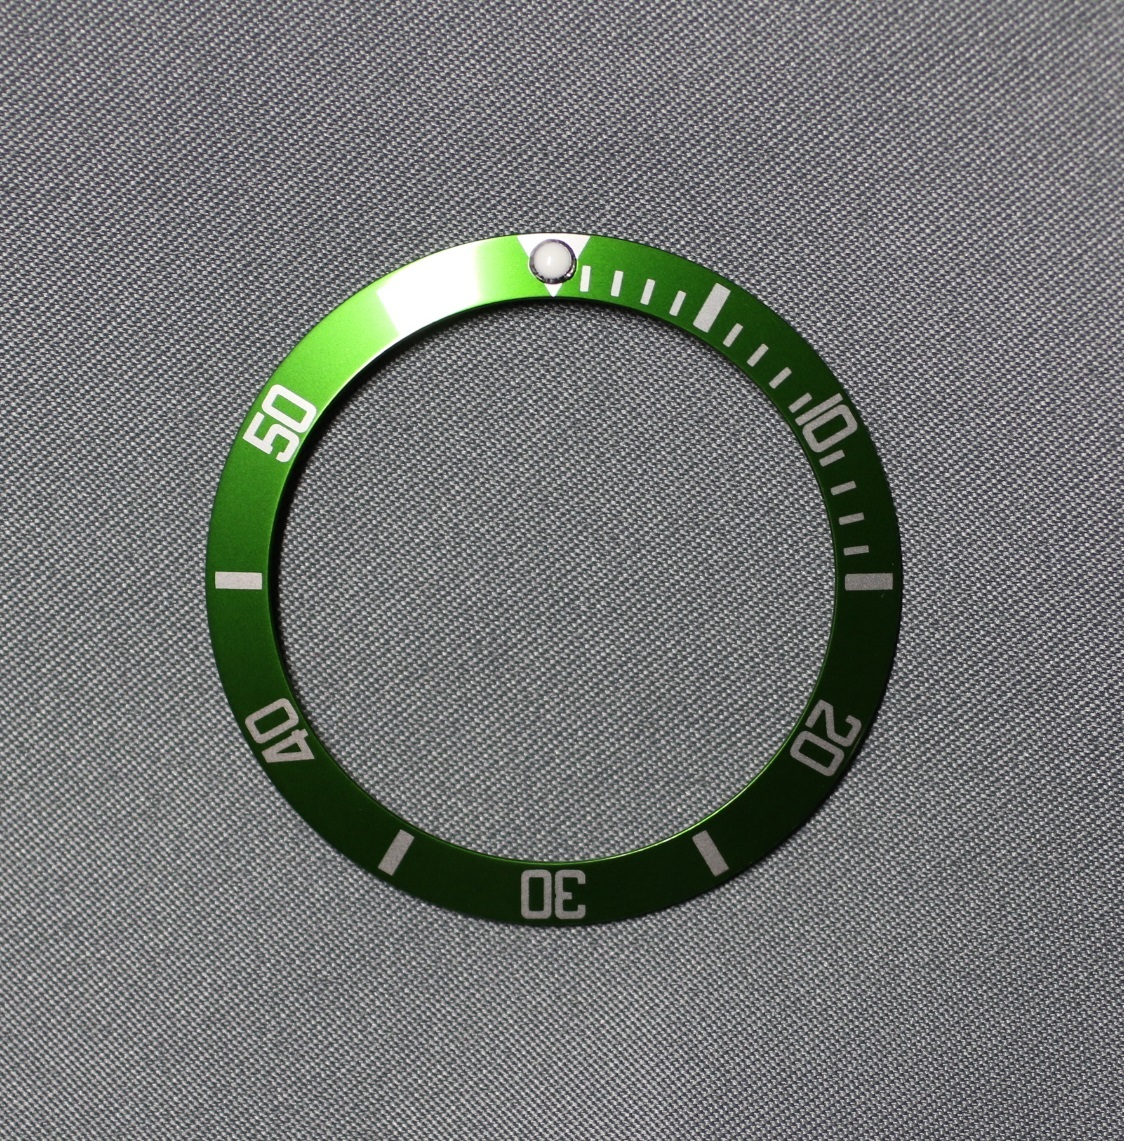  не оригинальный товар  　rolex　16610LV *  16610 *  16800 и т.д.  для   зеленый 　 зеленый 　... диск 　...　... ячейка  вставить  　...　  серебро  цвет  цифра 　 новый товар   не оригинальный товар  